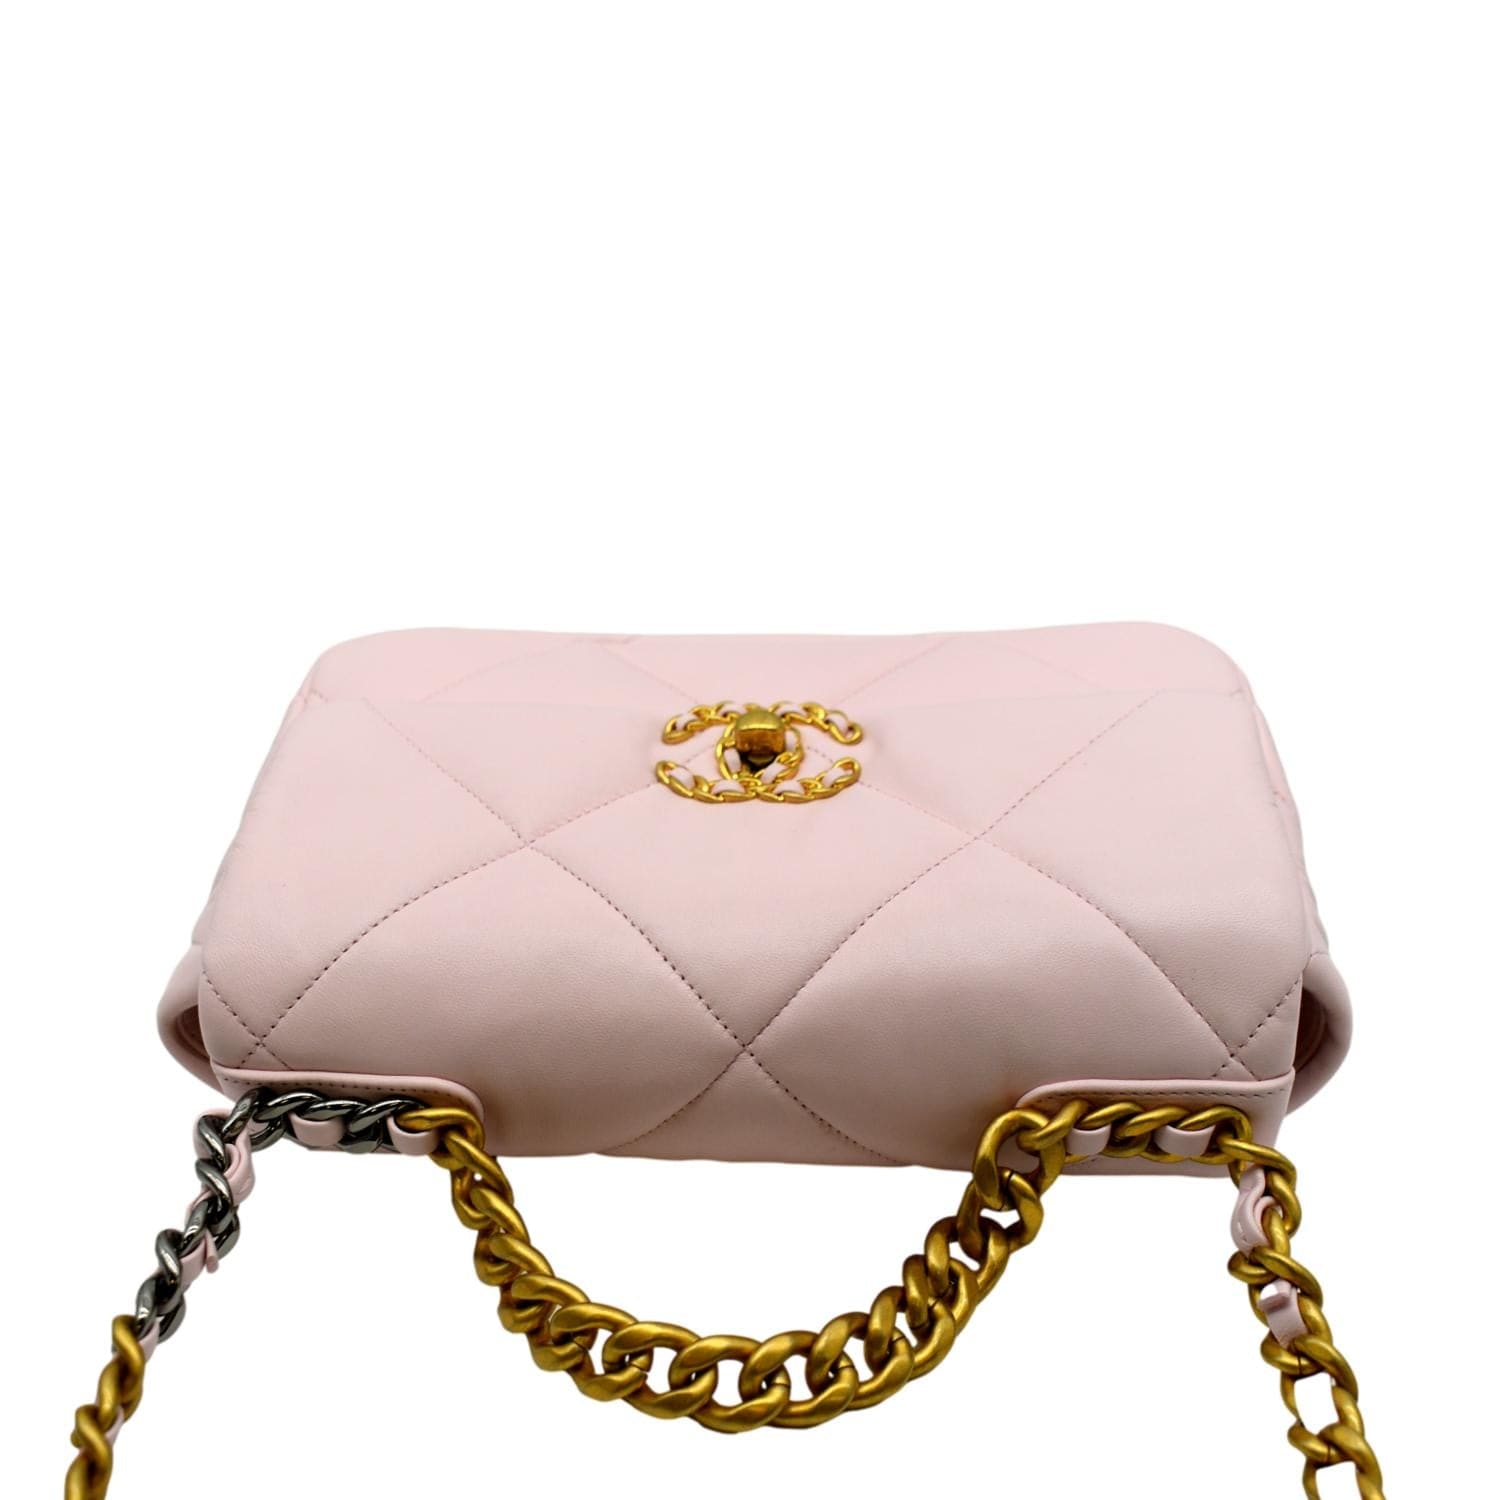 Chanel 19 Flap Bag Maxi Lamb Gold | SACLÀB